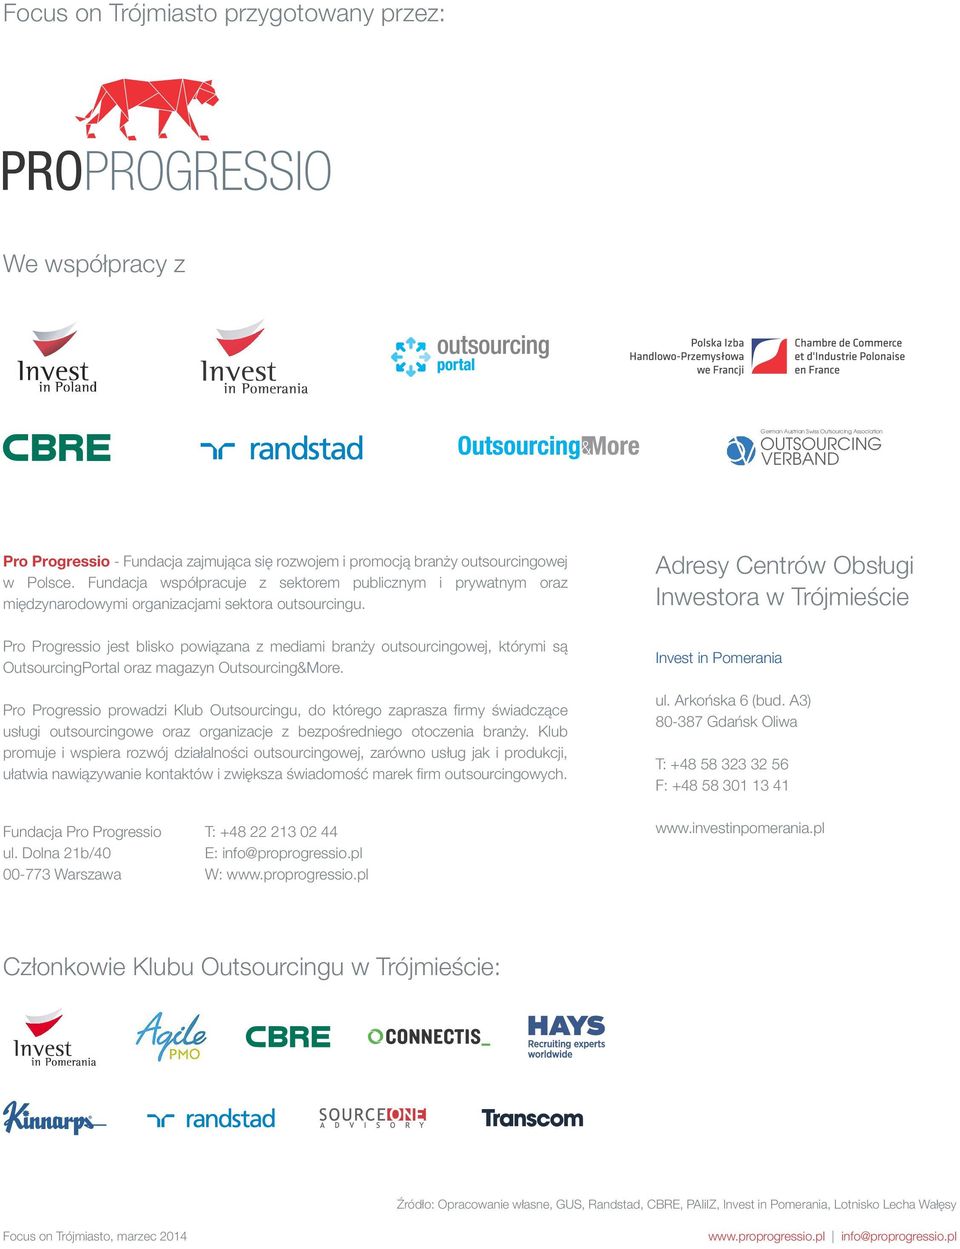 Pro Progressio jest blisko powiązana z mediami branży outsourcingowej, którymi są OutsourcingPortal oraz magazyn Outsourcing&More.